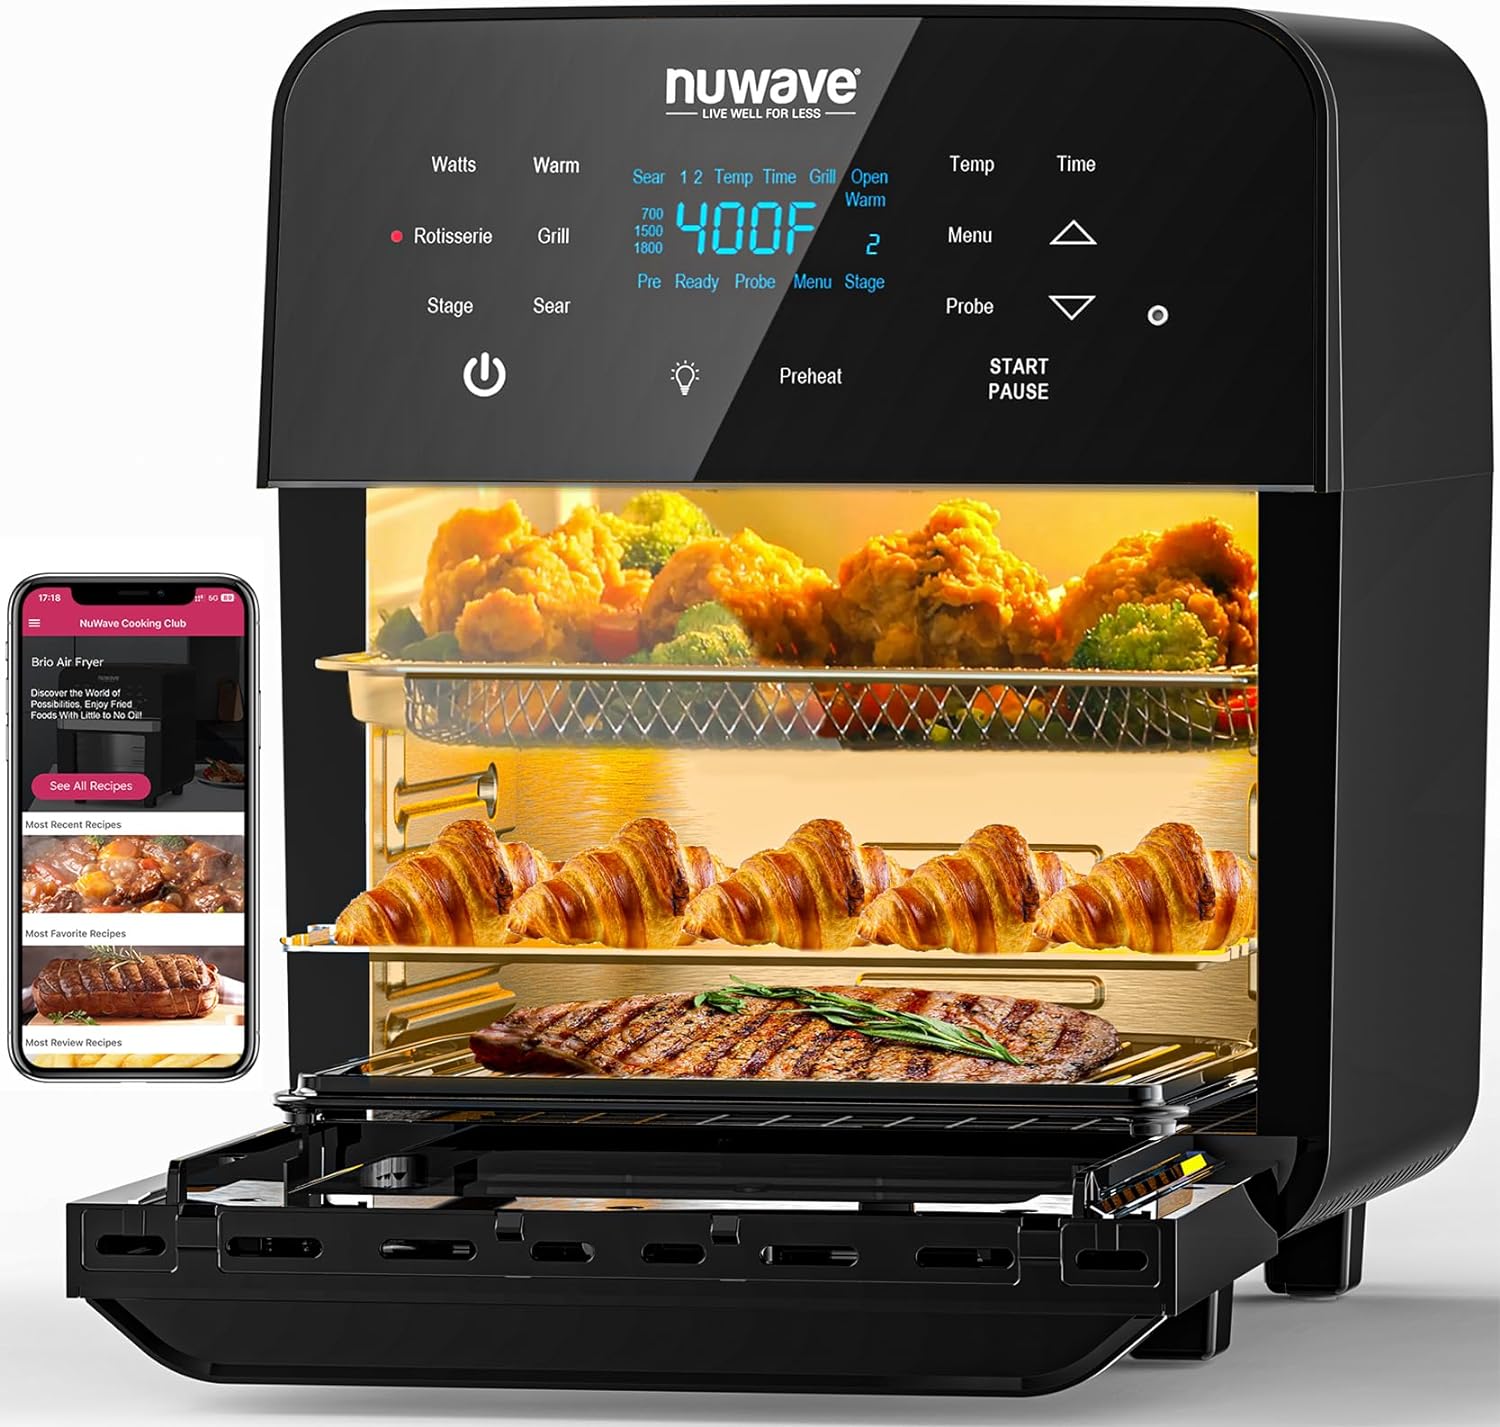 Nuwave Brio Air Fryer Oven